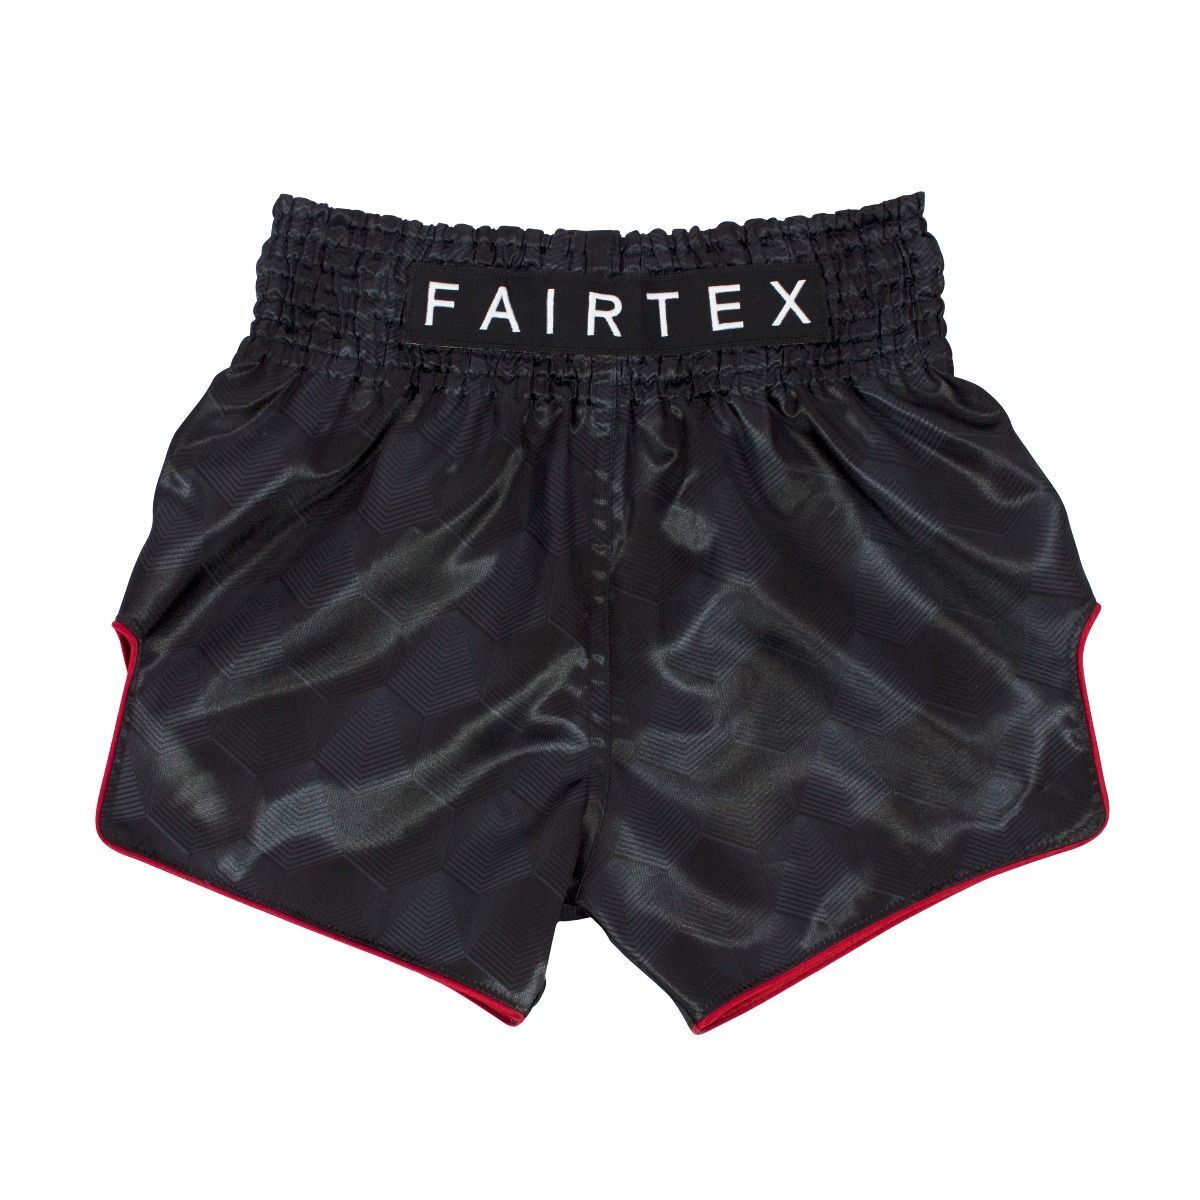 Fairtex "Stealth" Black Muay Thai Shorts - BS1901-0